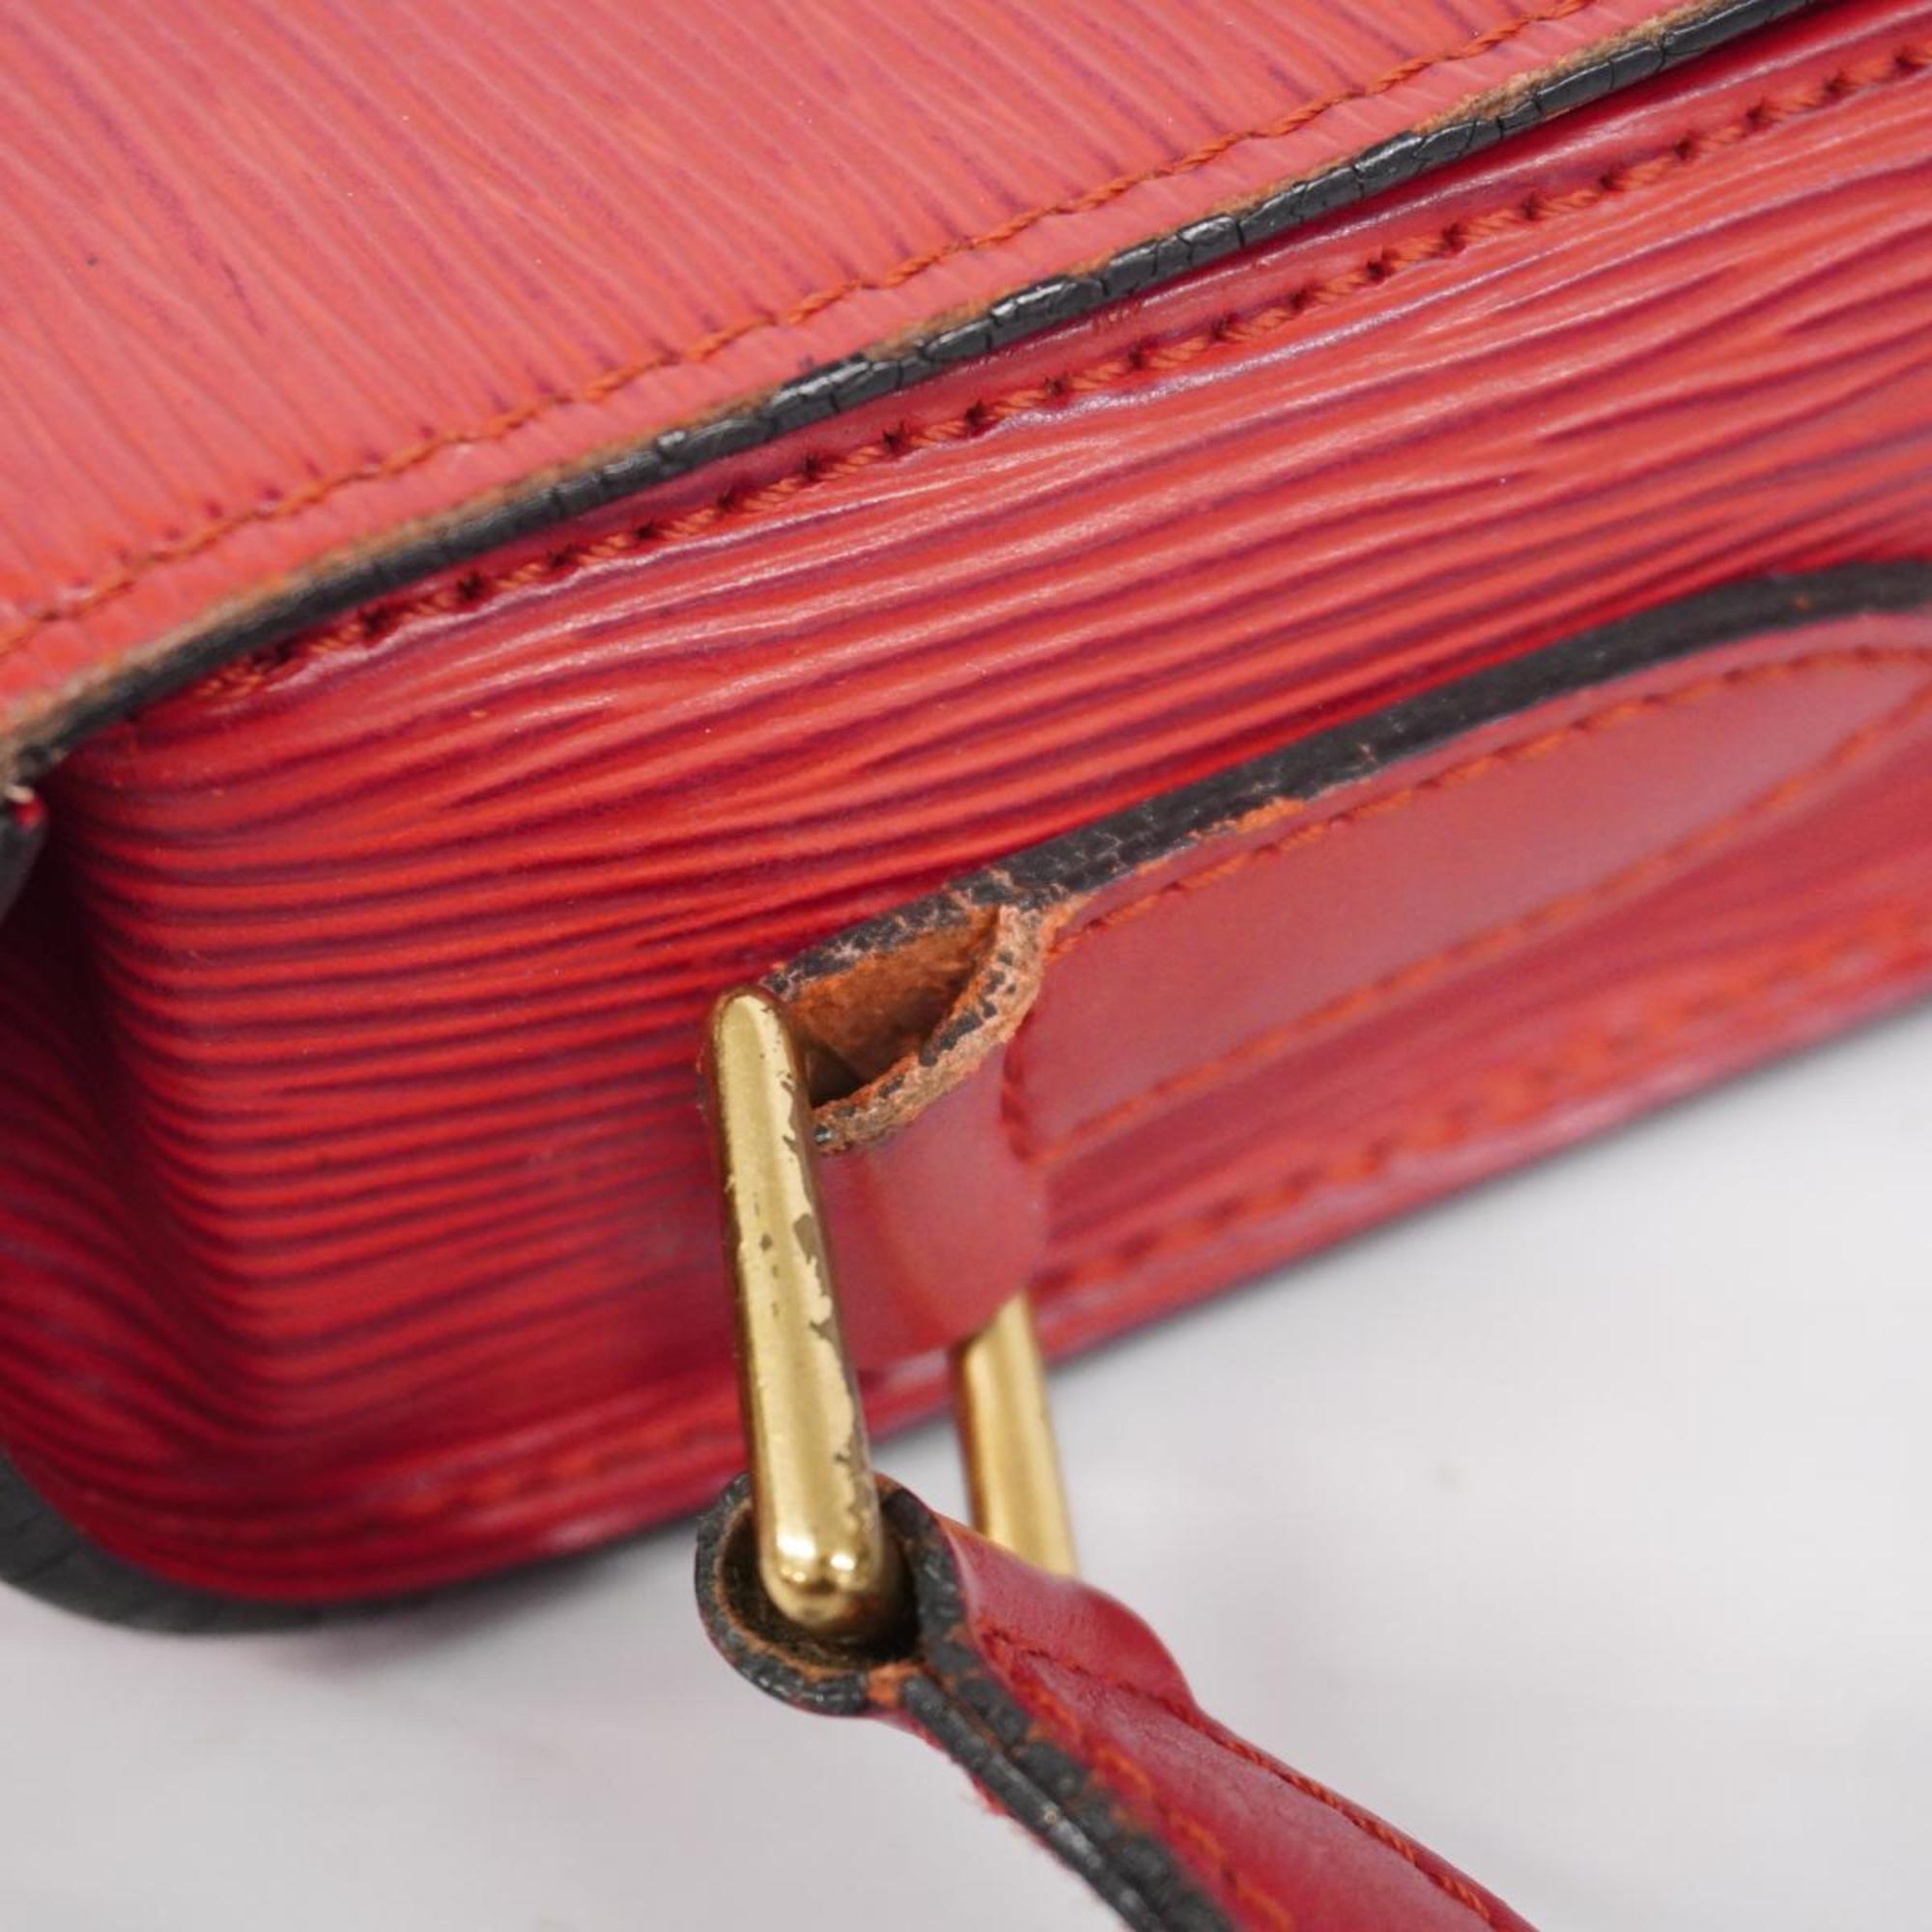 Louis Vuitton Shoulder Bag Epi Saint-Clair M52197 Castilian Red Women's